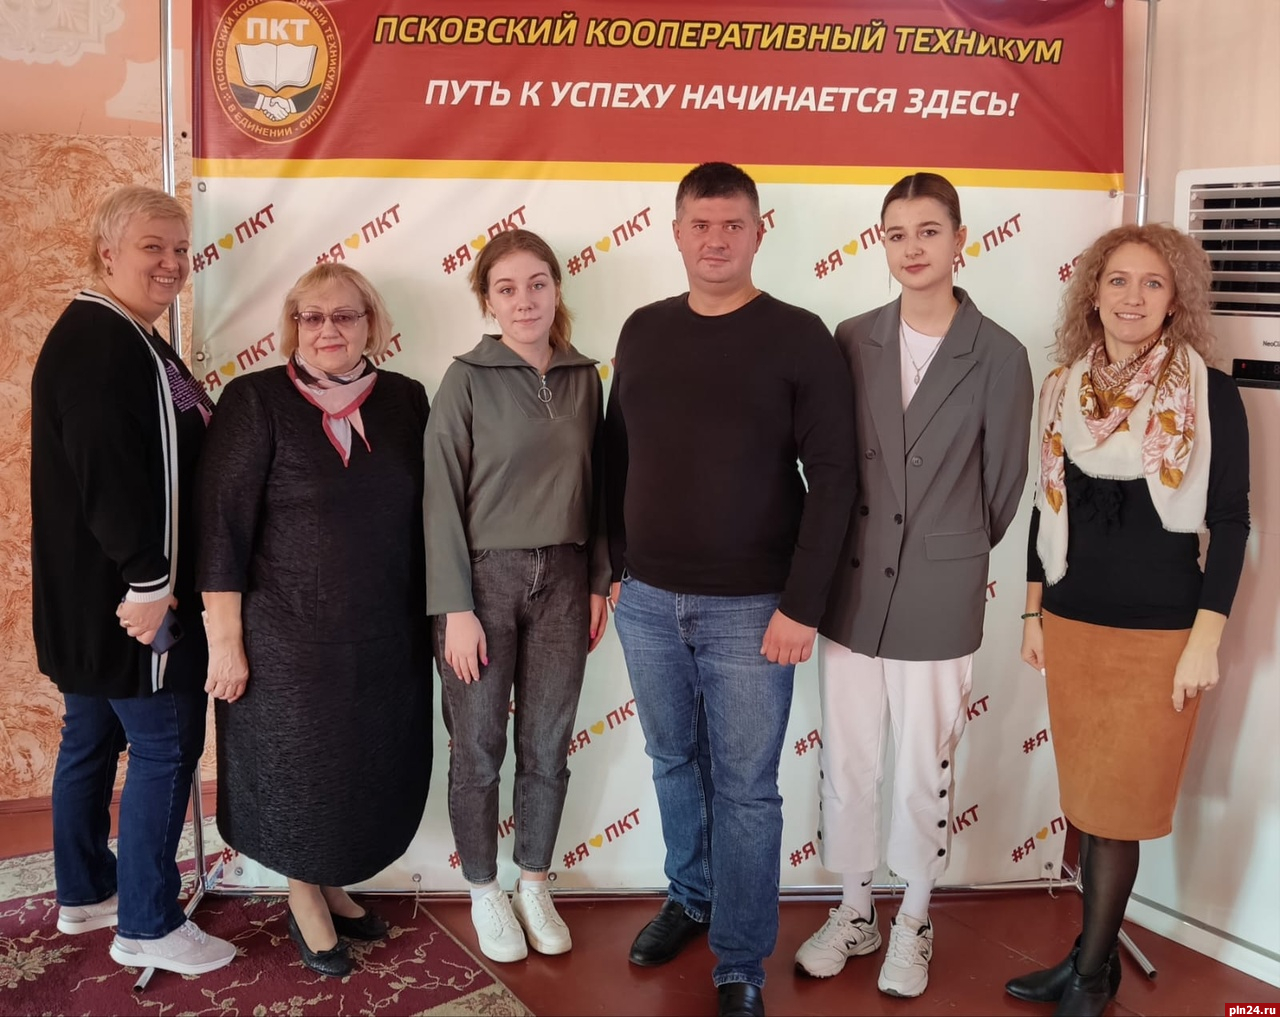 Более 40 студентов псковского кооперативного техникума вступили в профсоюз